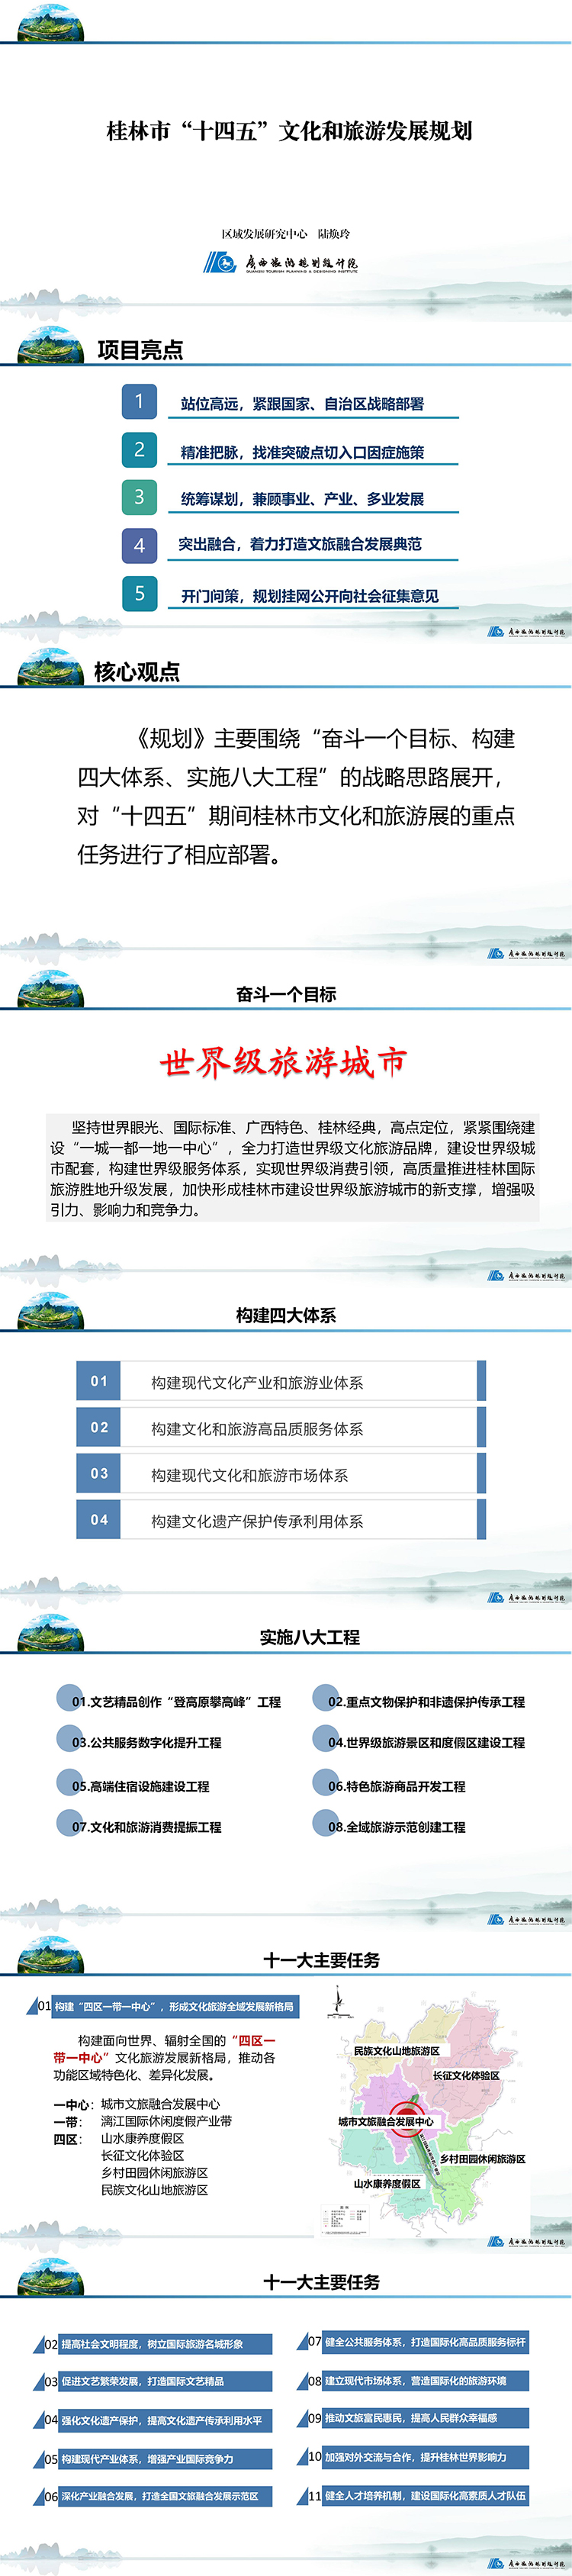 《桂林市“十四五”文化和旅游发展规划》 - 副本.jpg